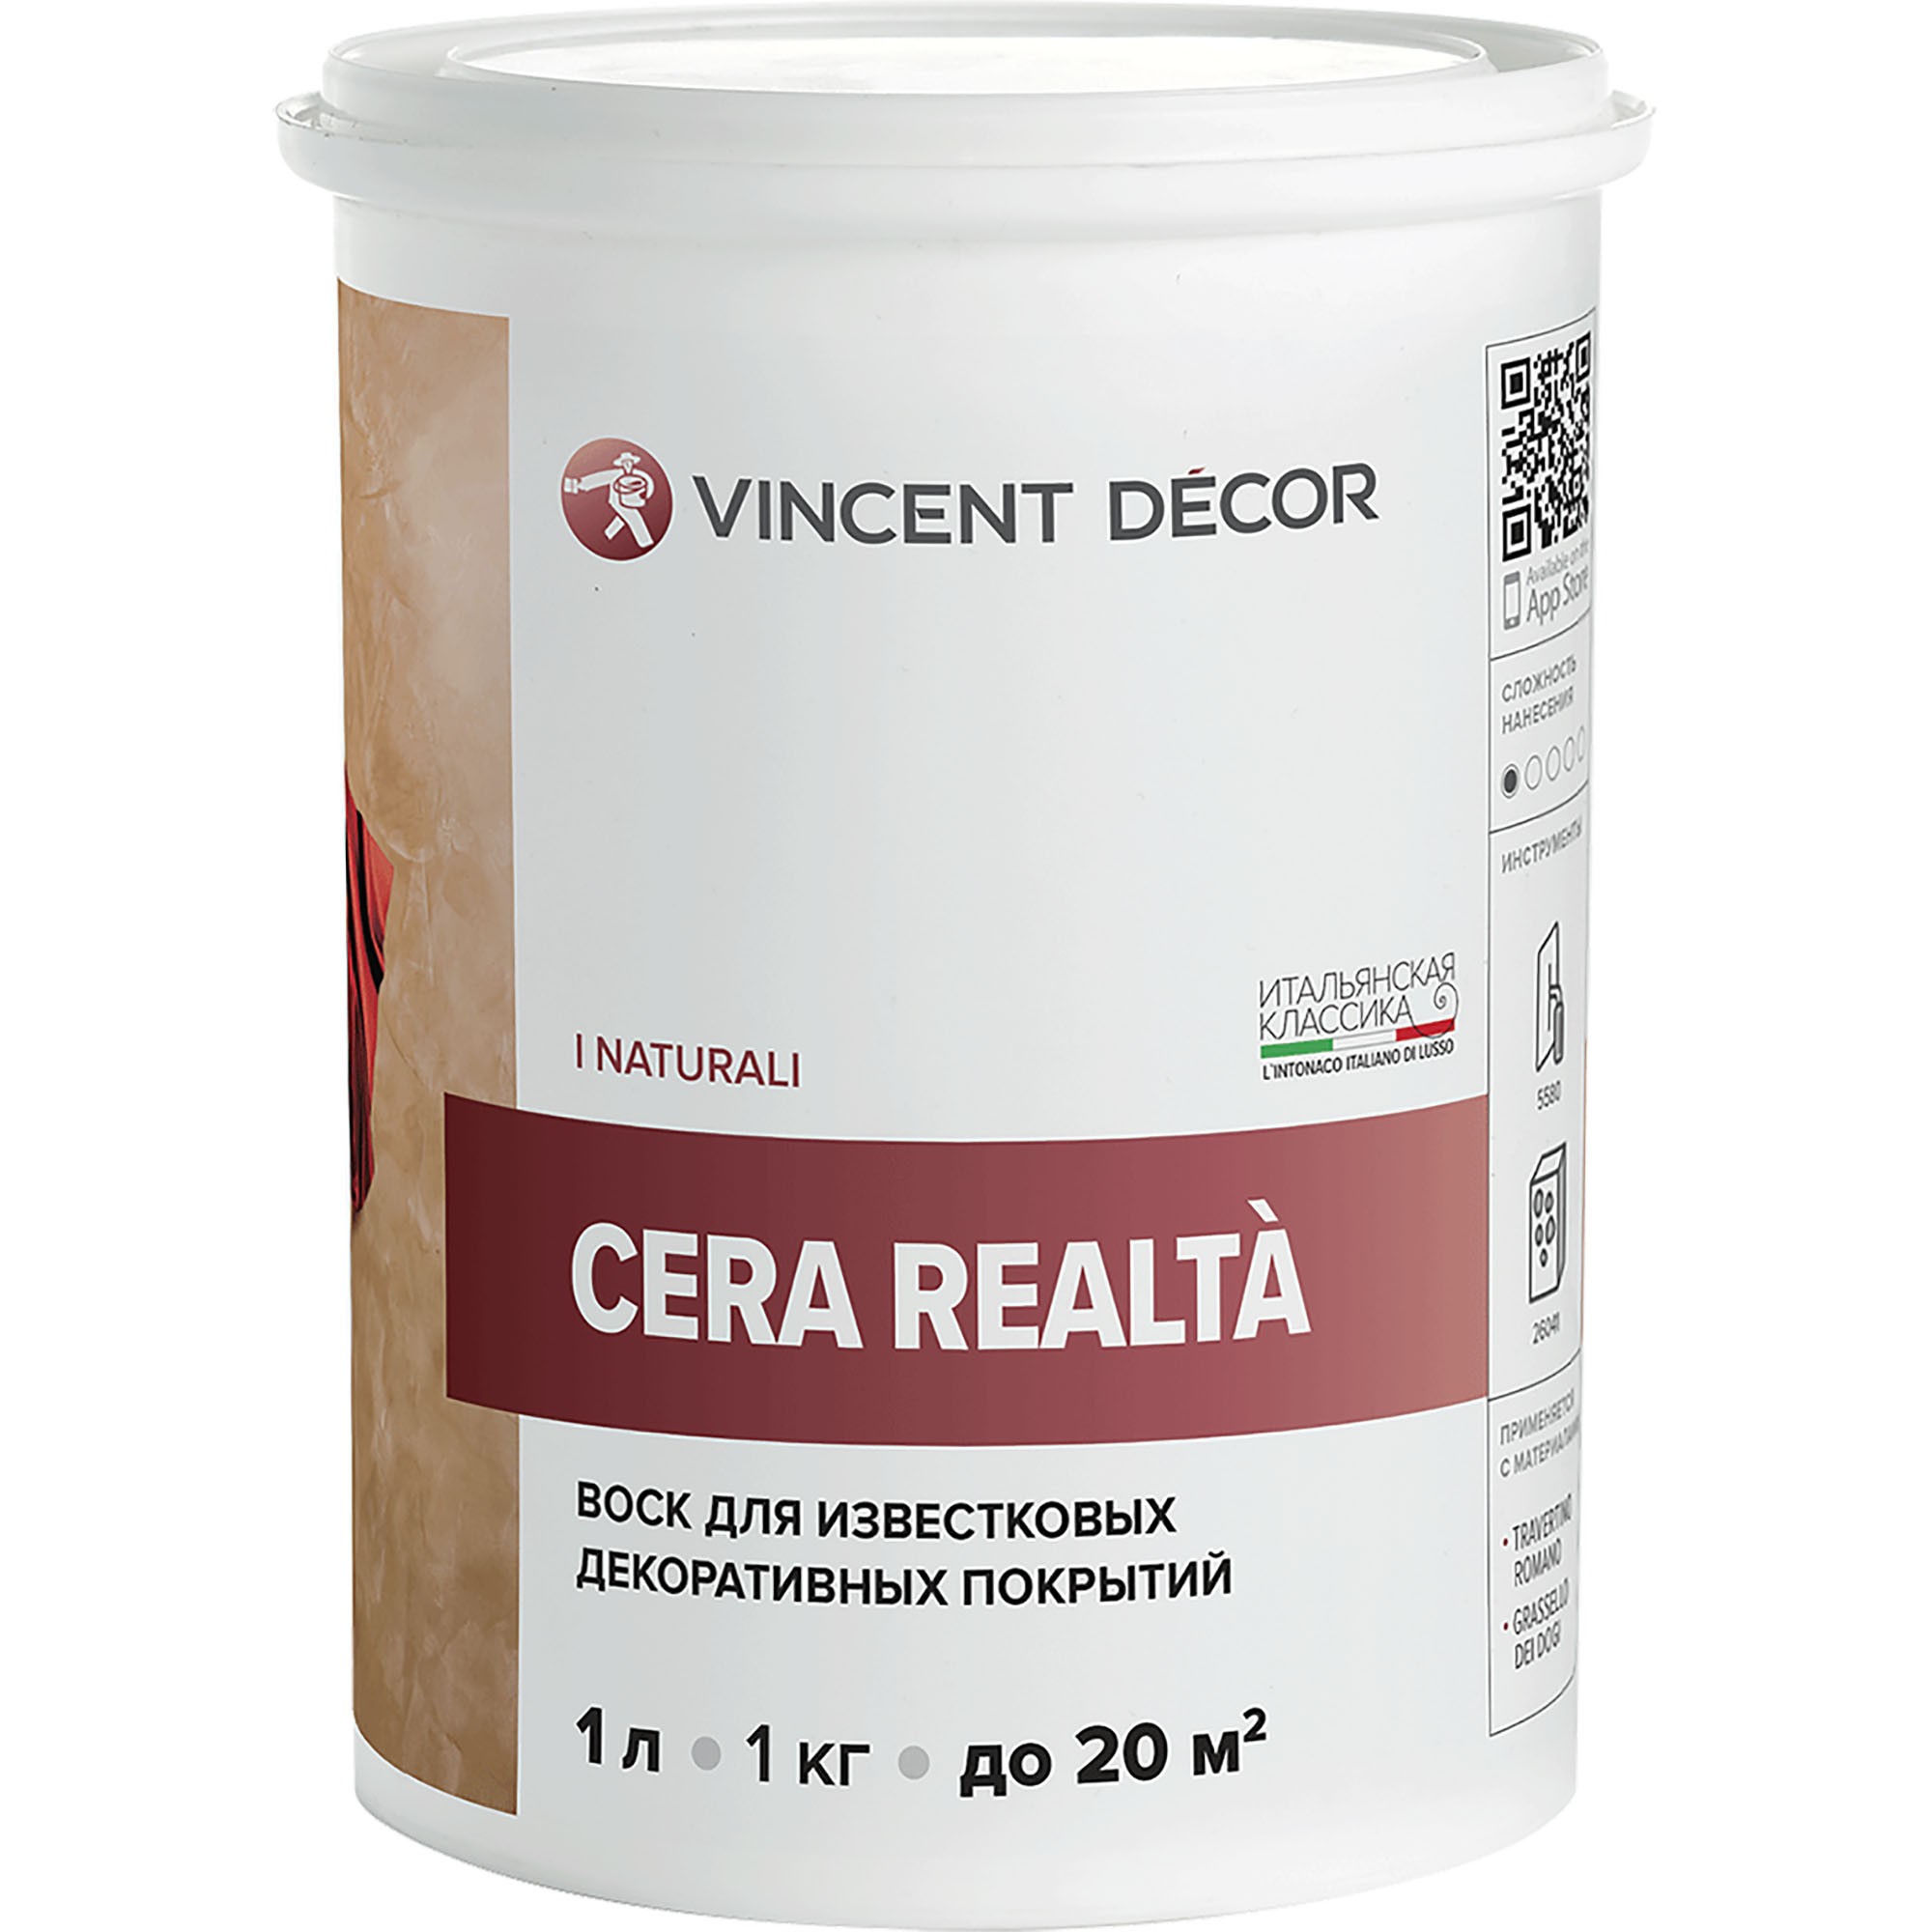 Воск защитный Vincent Decor Cera Realta для известковых декоративных покрытий 1 л воск защитный vincent decor cera realta для известковых декоративных покрытий 1 л